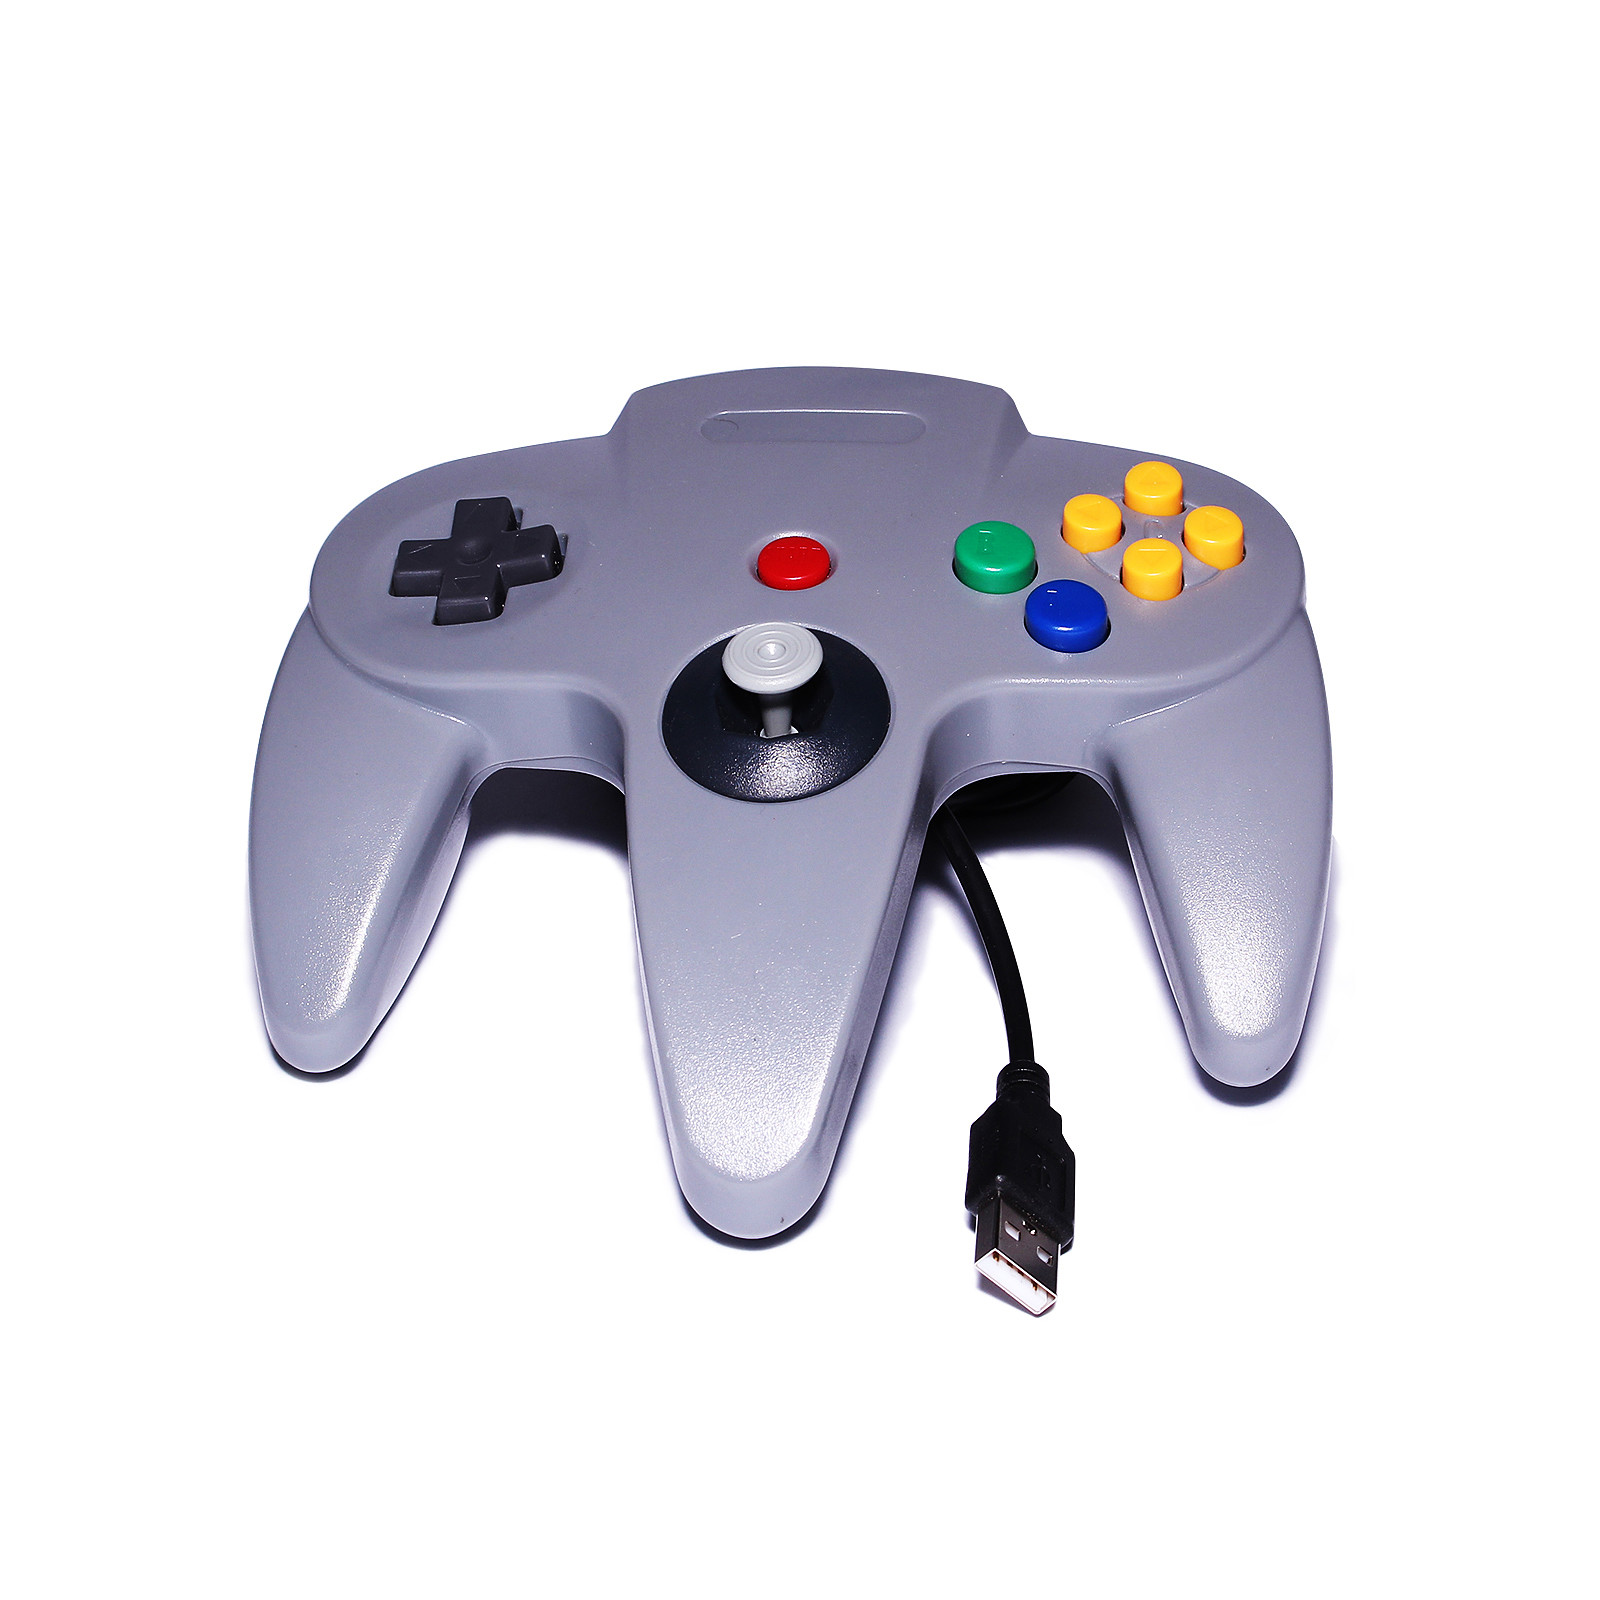 Manette USB pour retrogaming (Nintendo 64) - Manette PC Generique